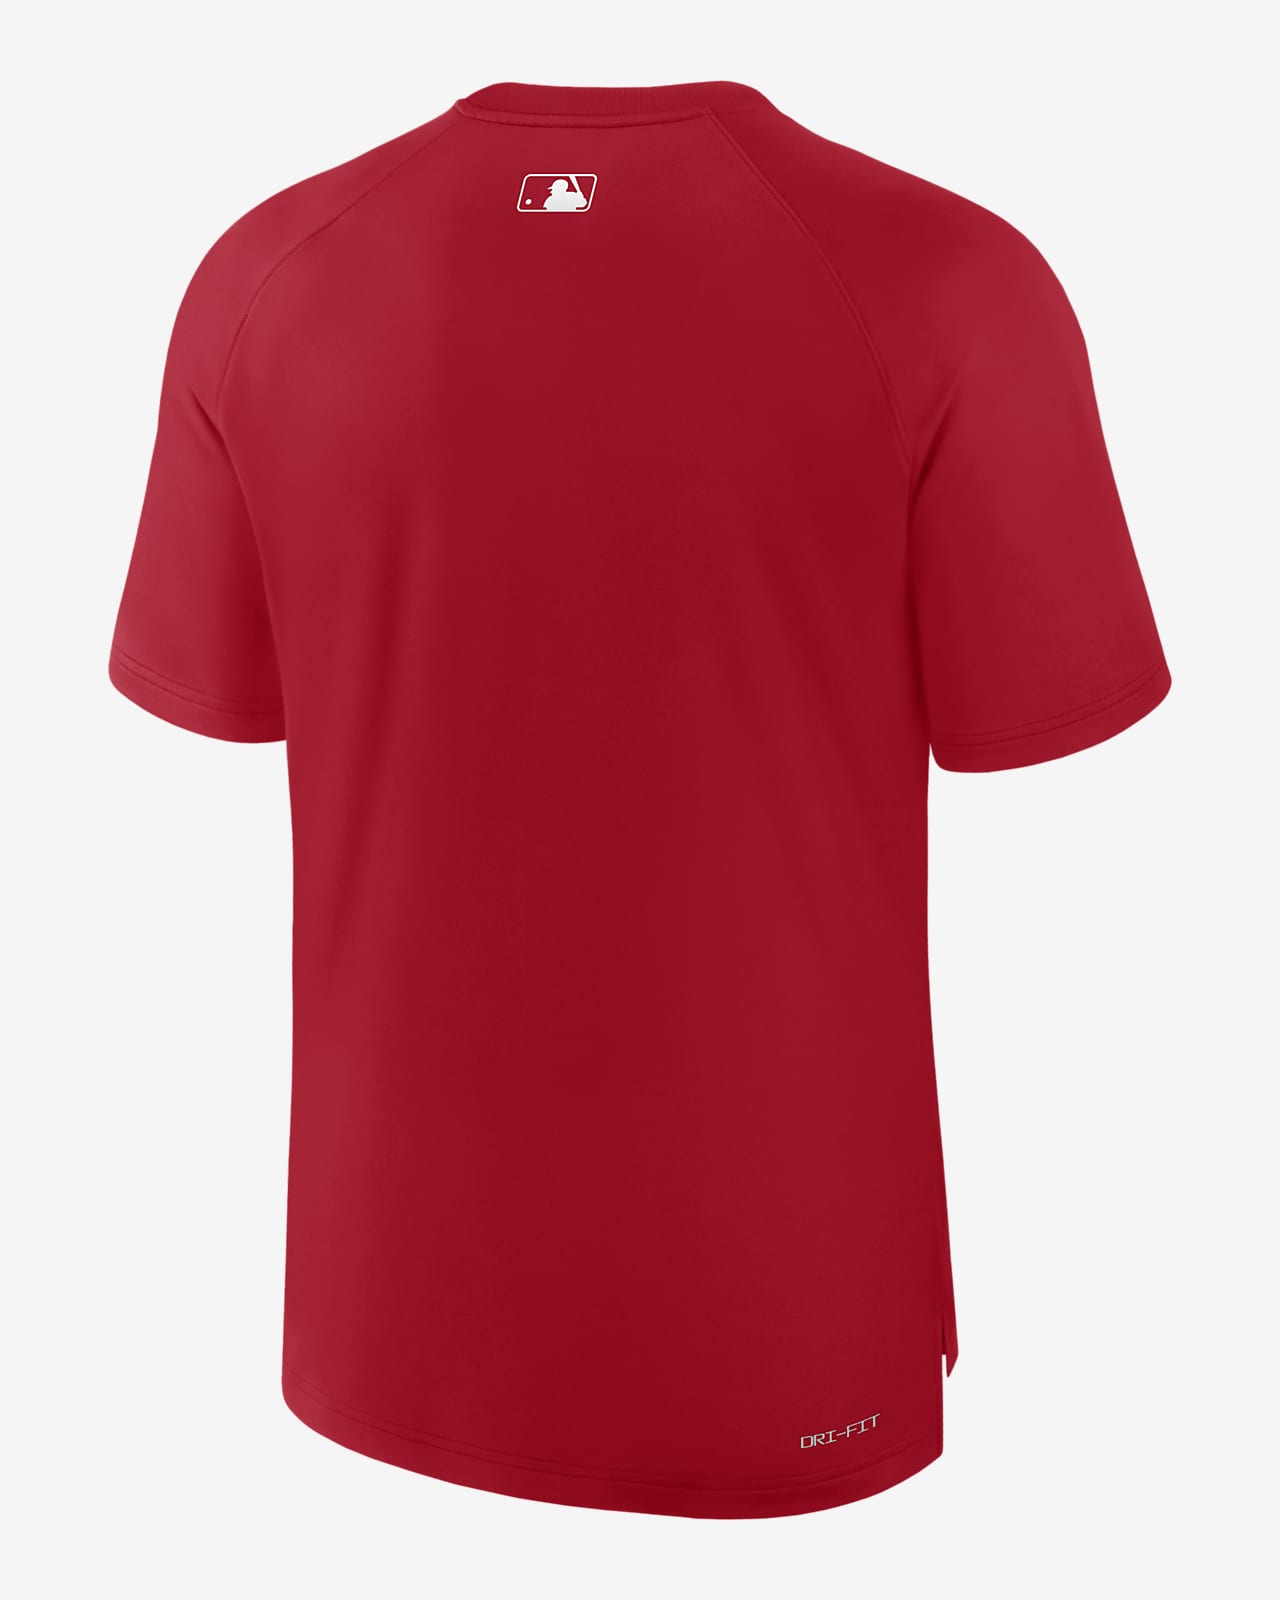 St. Louis Cardinals Authentic Collection Pregame Men's Nike Dri-FIT MLB  T-Shirt